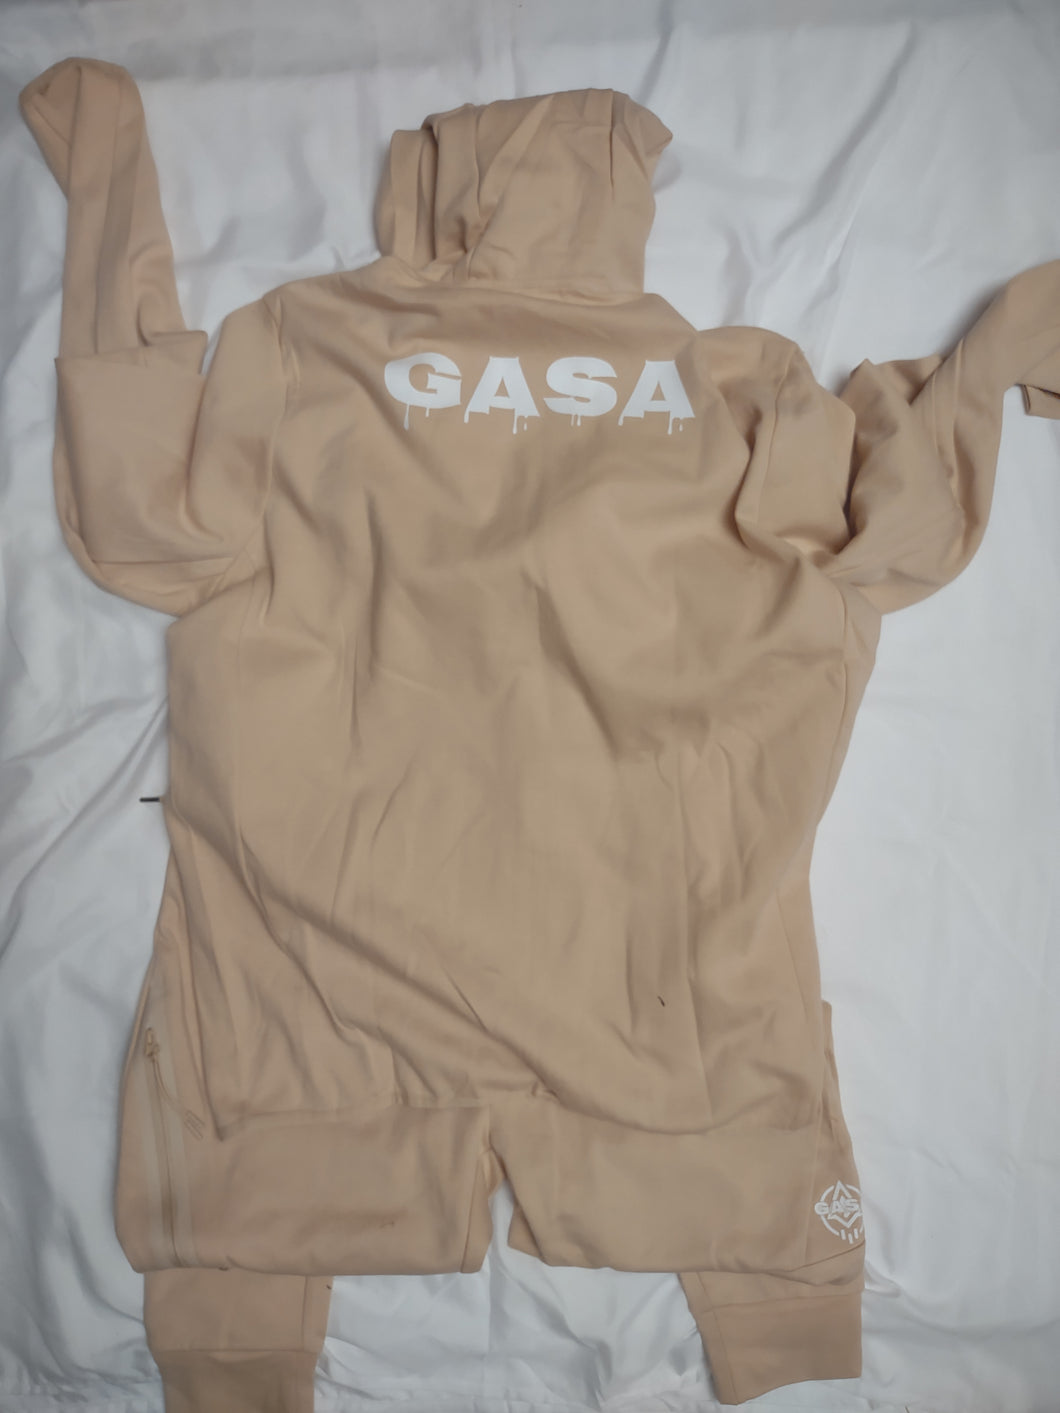 GASA tech suit